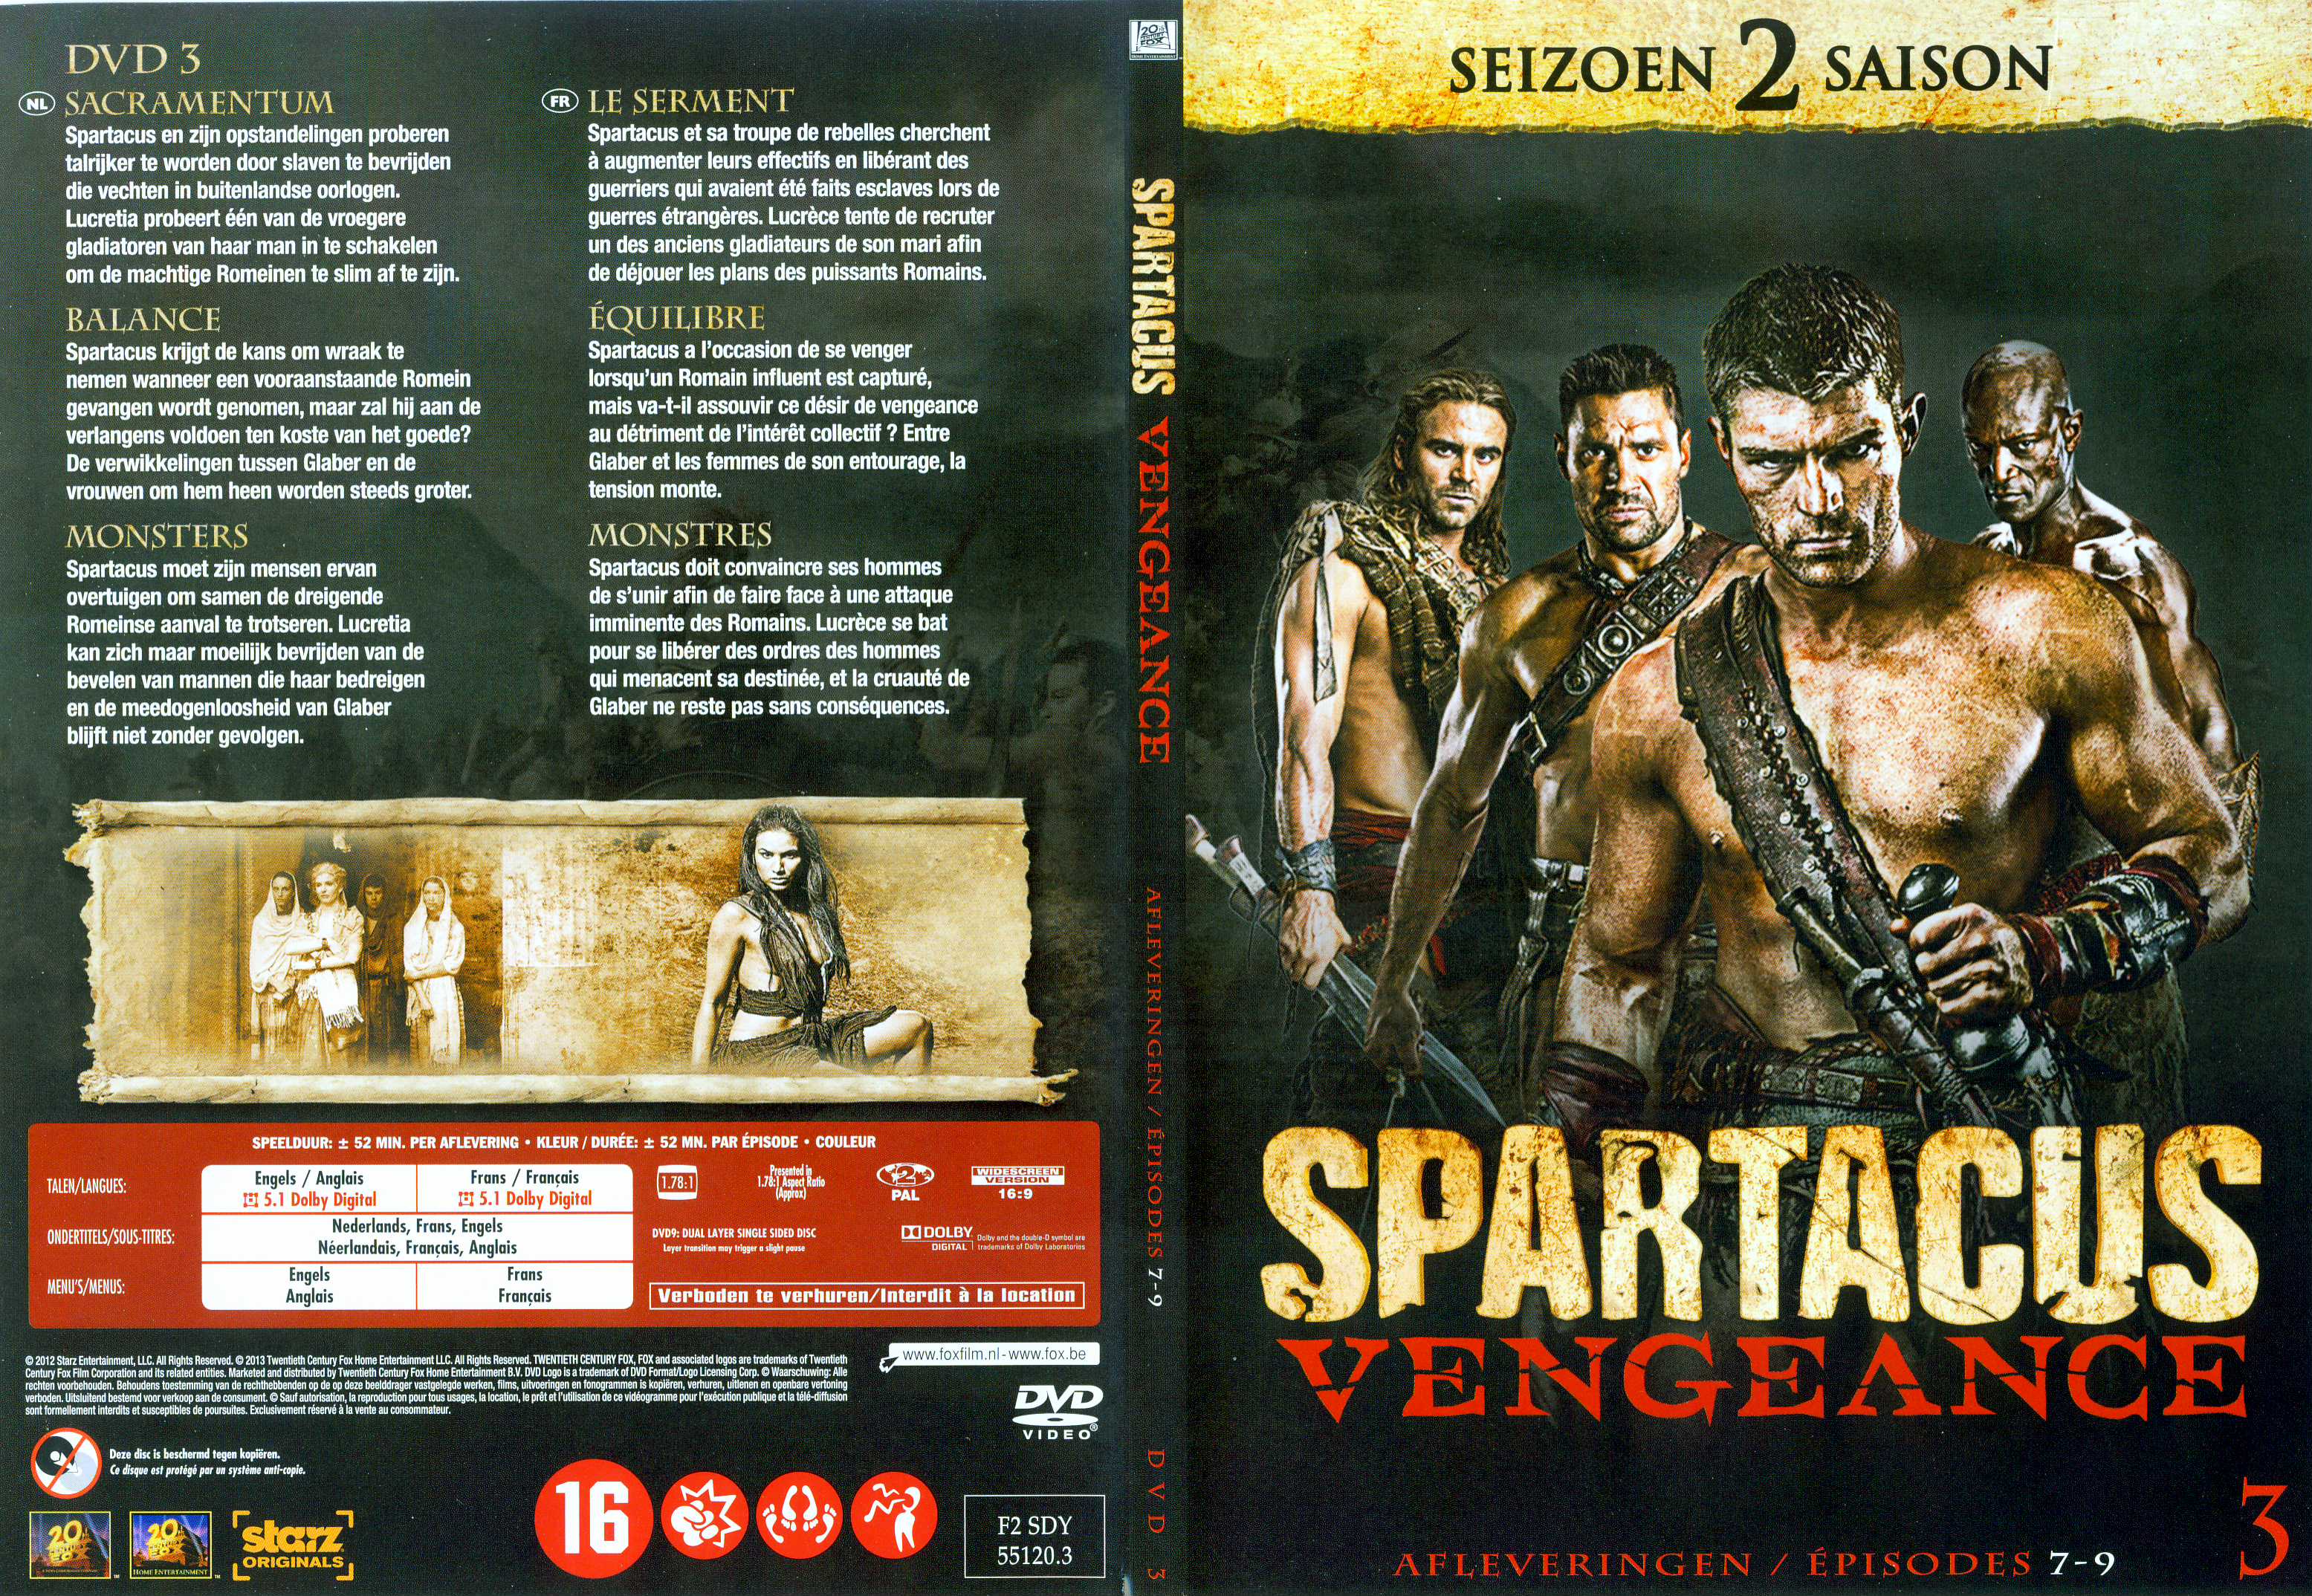 Jaquette DVD Spartacus vengeance Saison 2 DVD 3